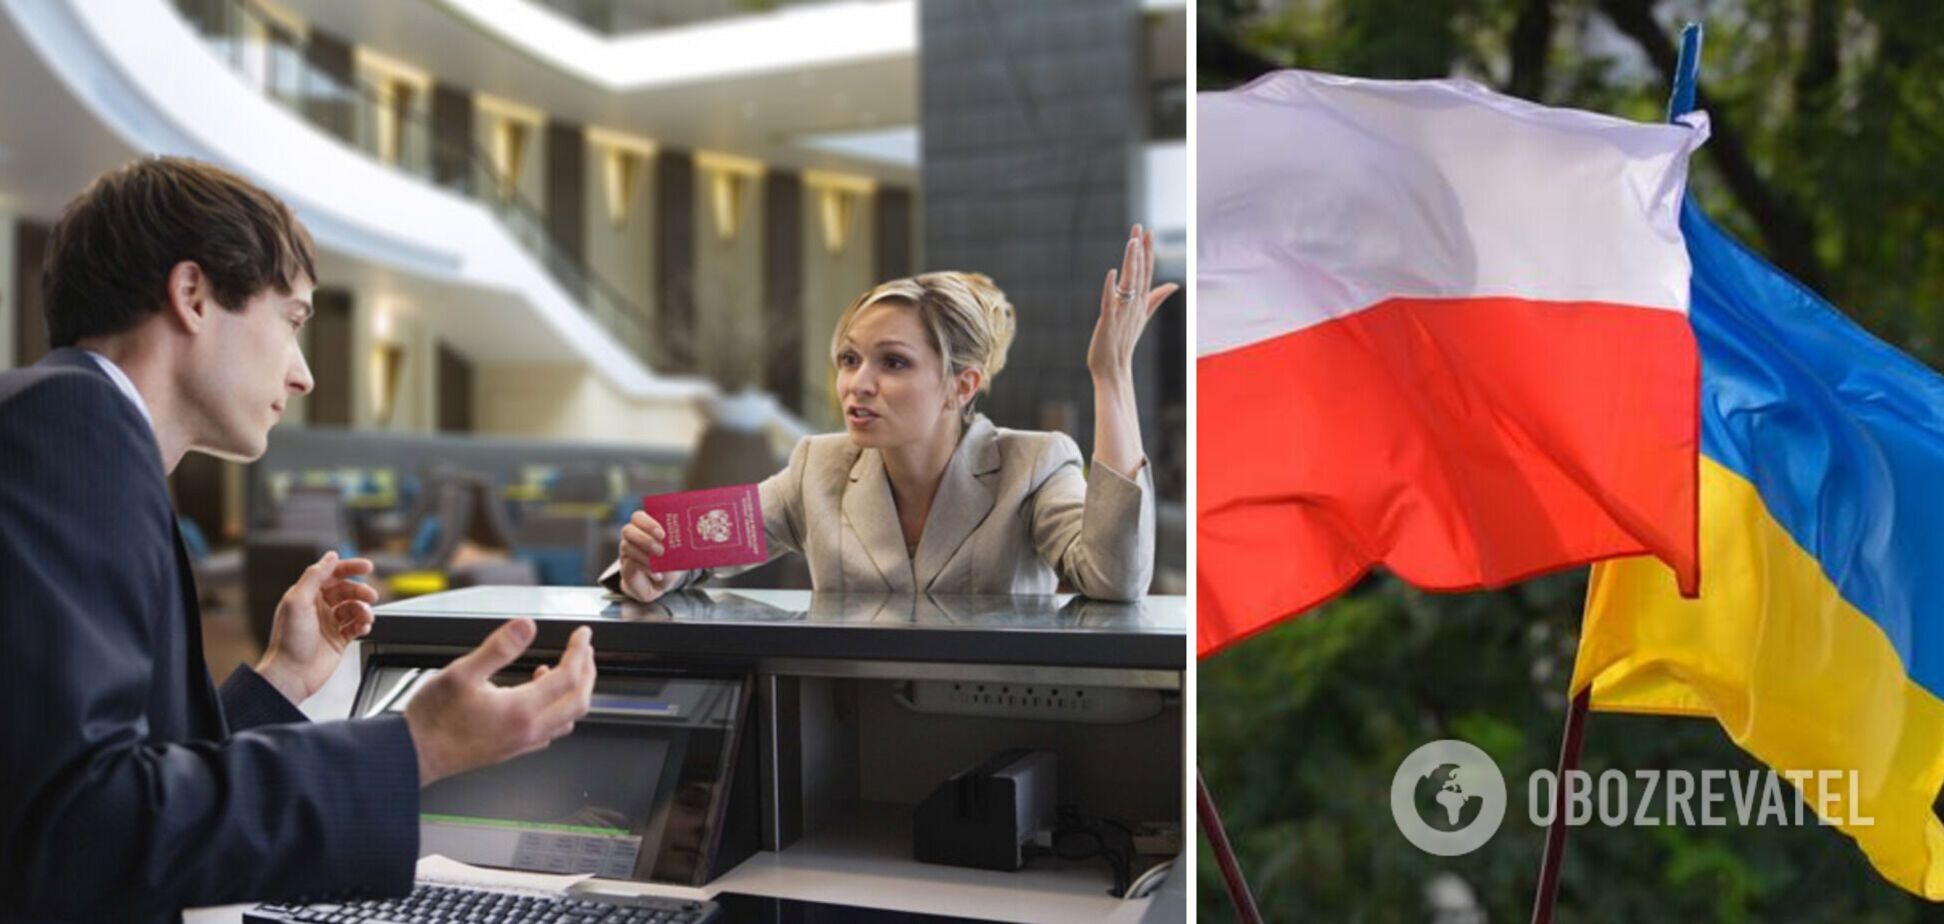 'Извините, мы не принимаем граждан России': в Варшаве отель отказался поселять российского туриста